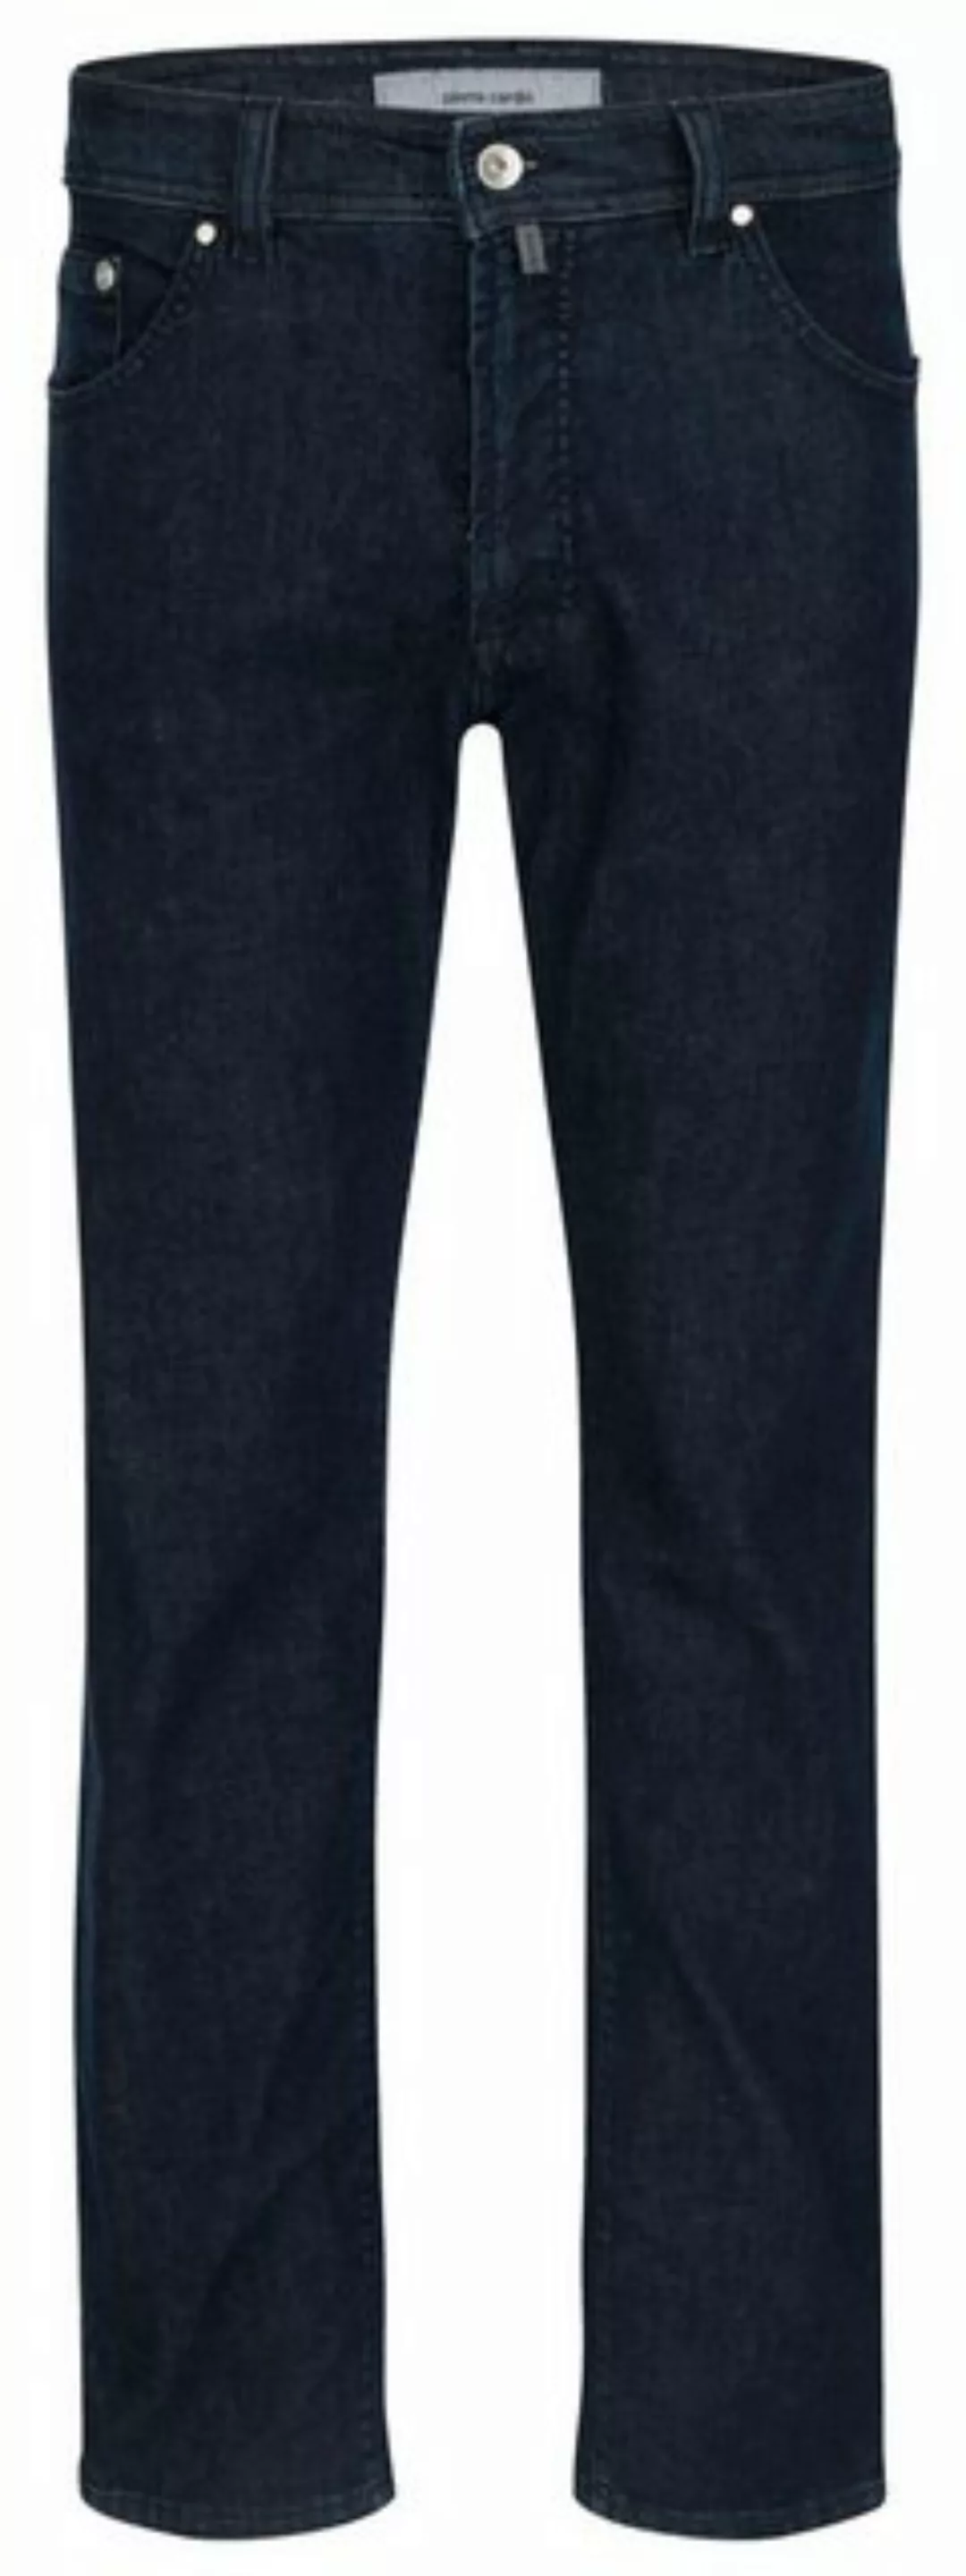 Pierre Cardin 5-Pocket-Jeans PIERRE CARDIN DEAUVILLE dark blue raw 31960 81 günstig online kaufen